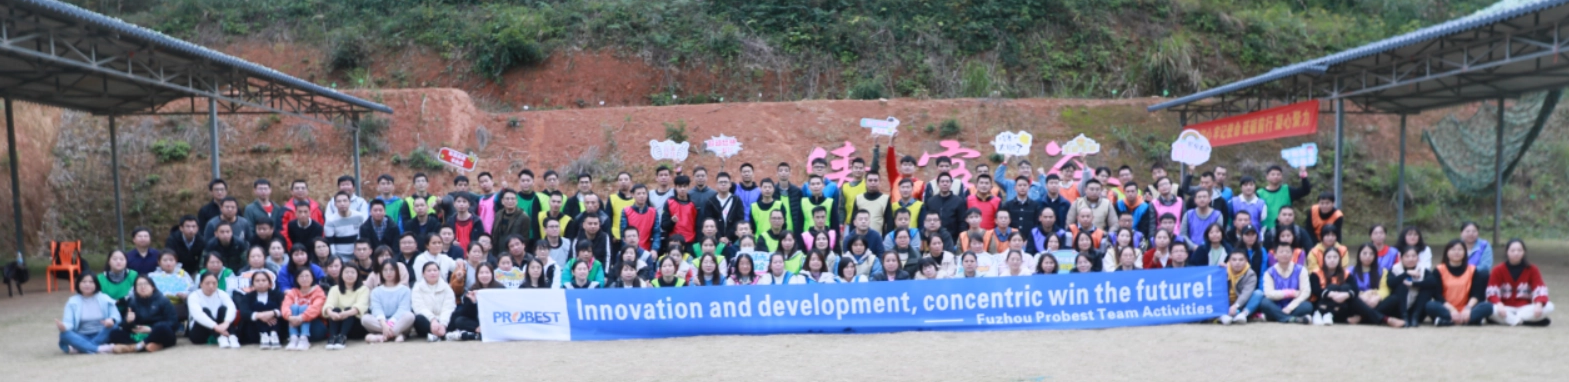 Trabalhe Juntos, Crie um Futuro Melhor!Atividade de formação de equipe Fuzhou Probest